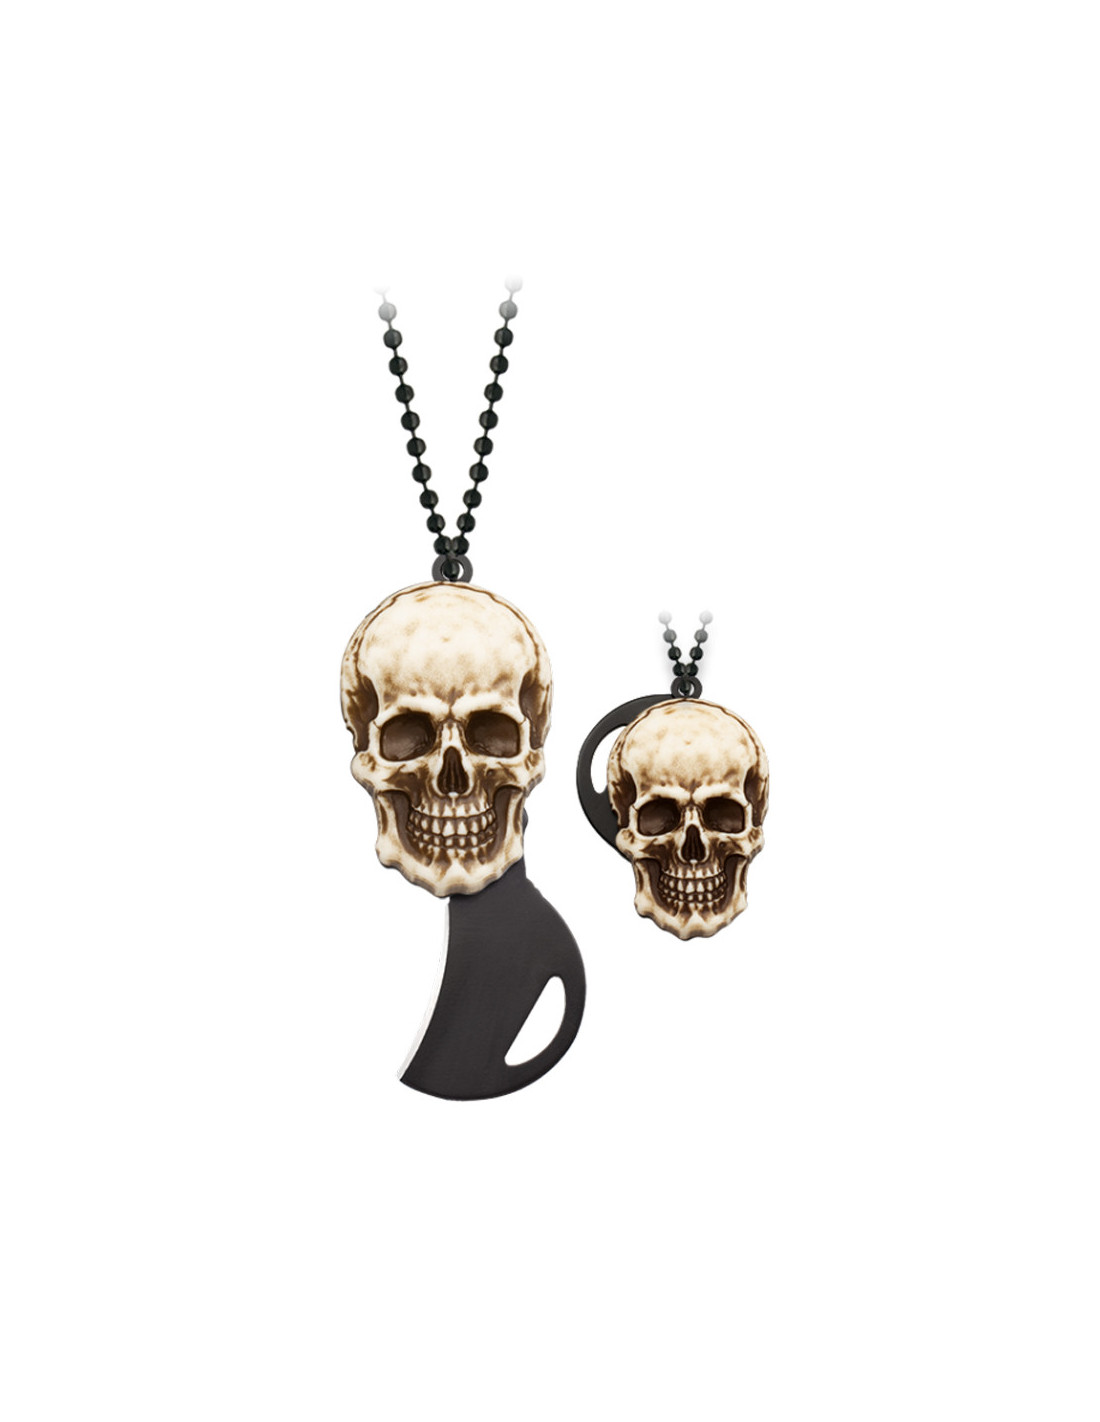 Mini coltellino tascabile con catena e manico Skull, lama 3 cm. ⚔️ Negozio